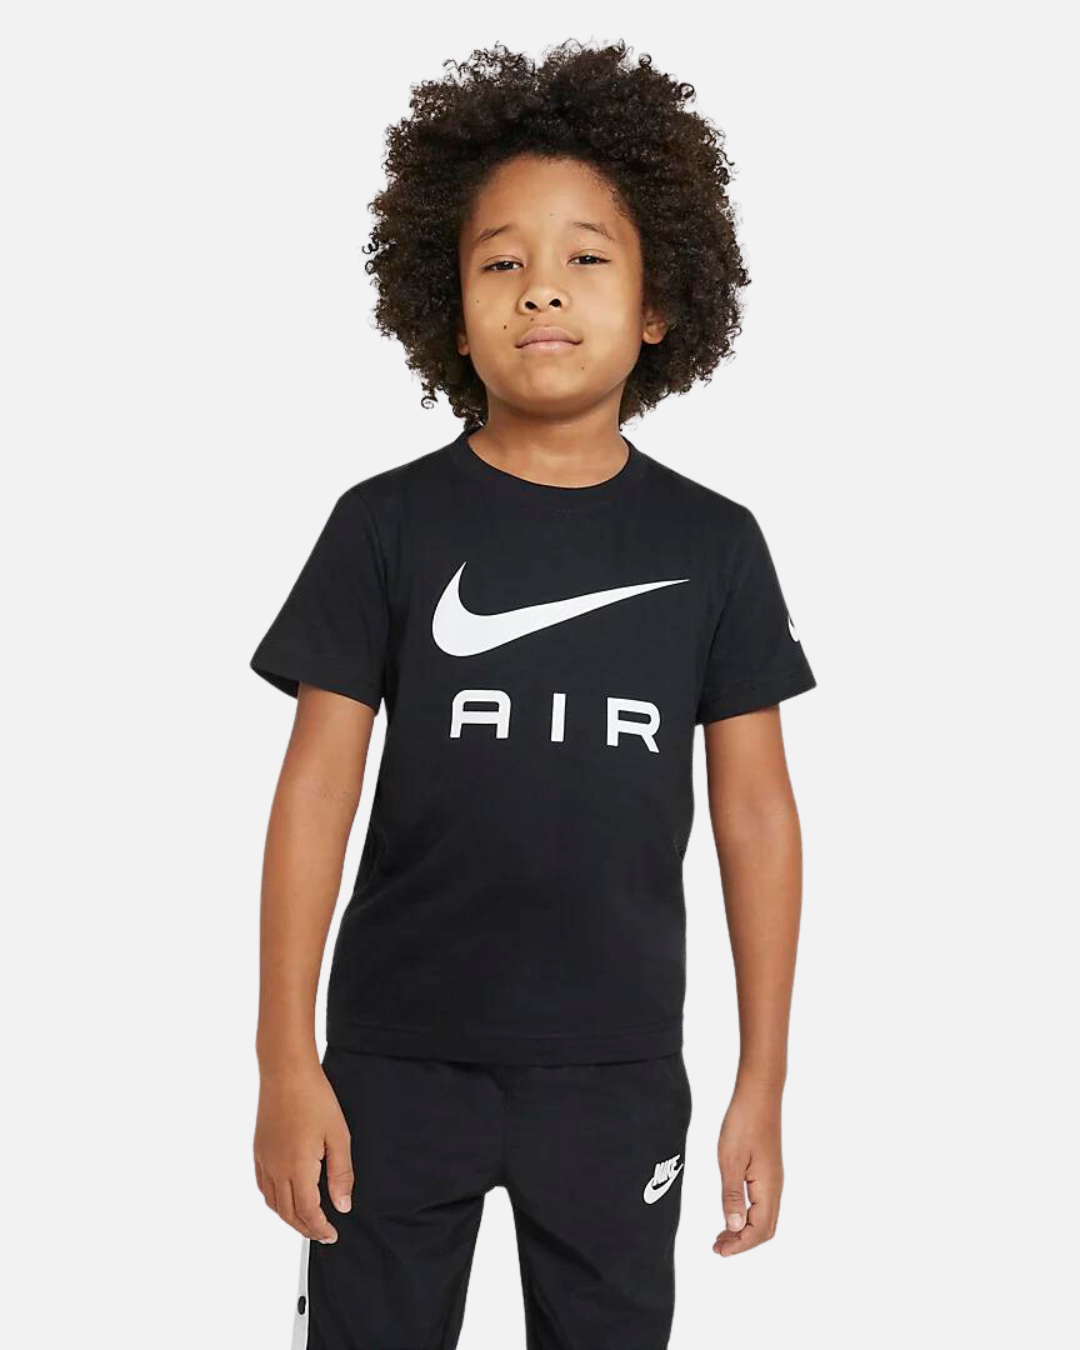 Nike Air Kinder T-Shirt - Schwarz